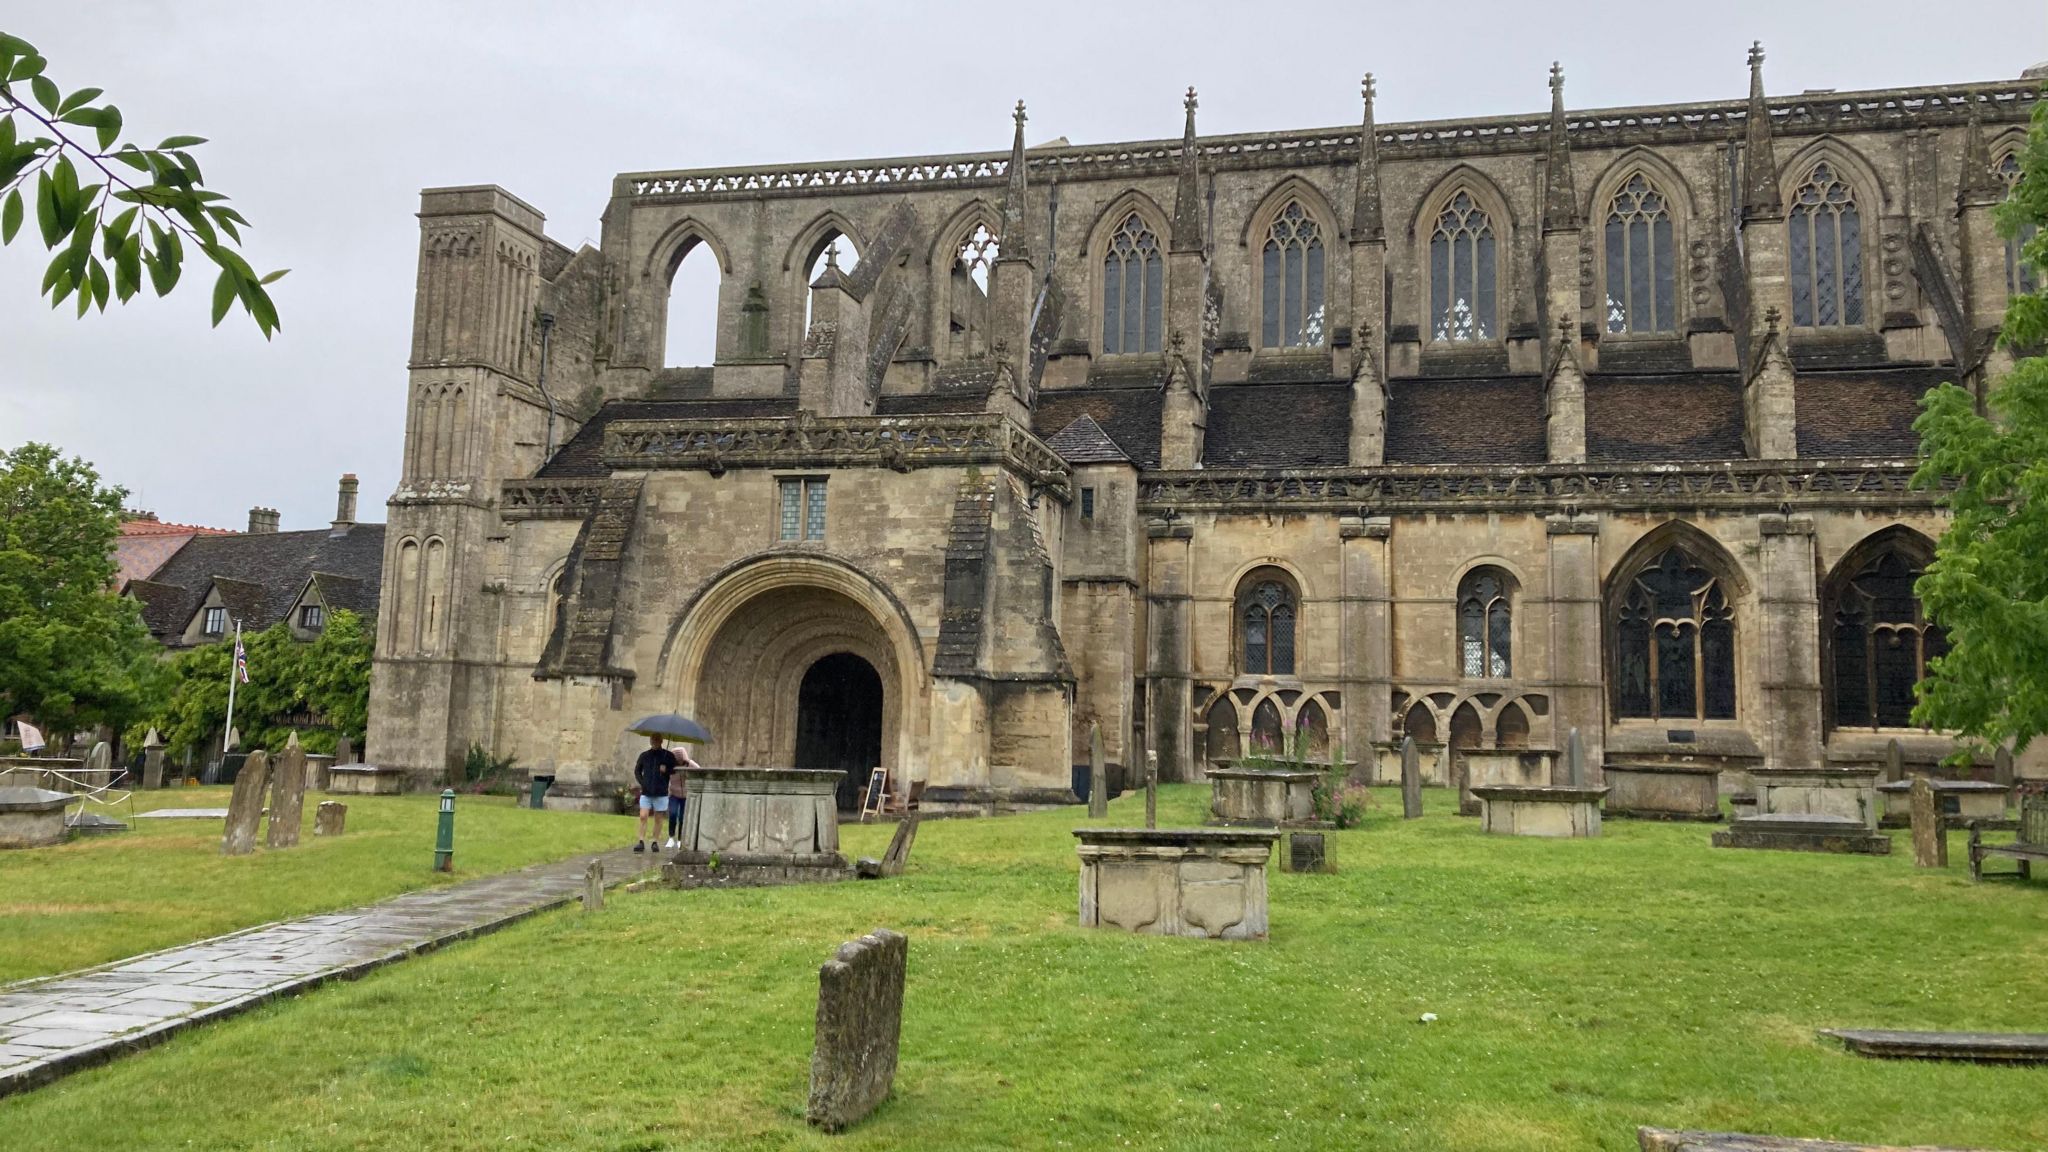 Malmesbury Abbey under a grey sky